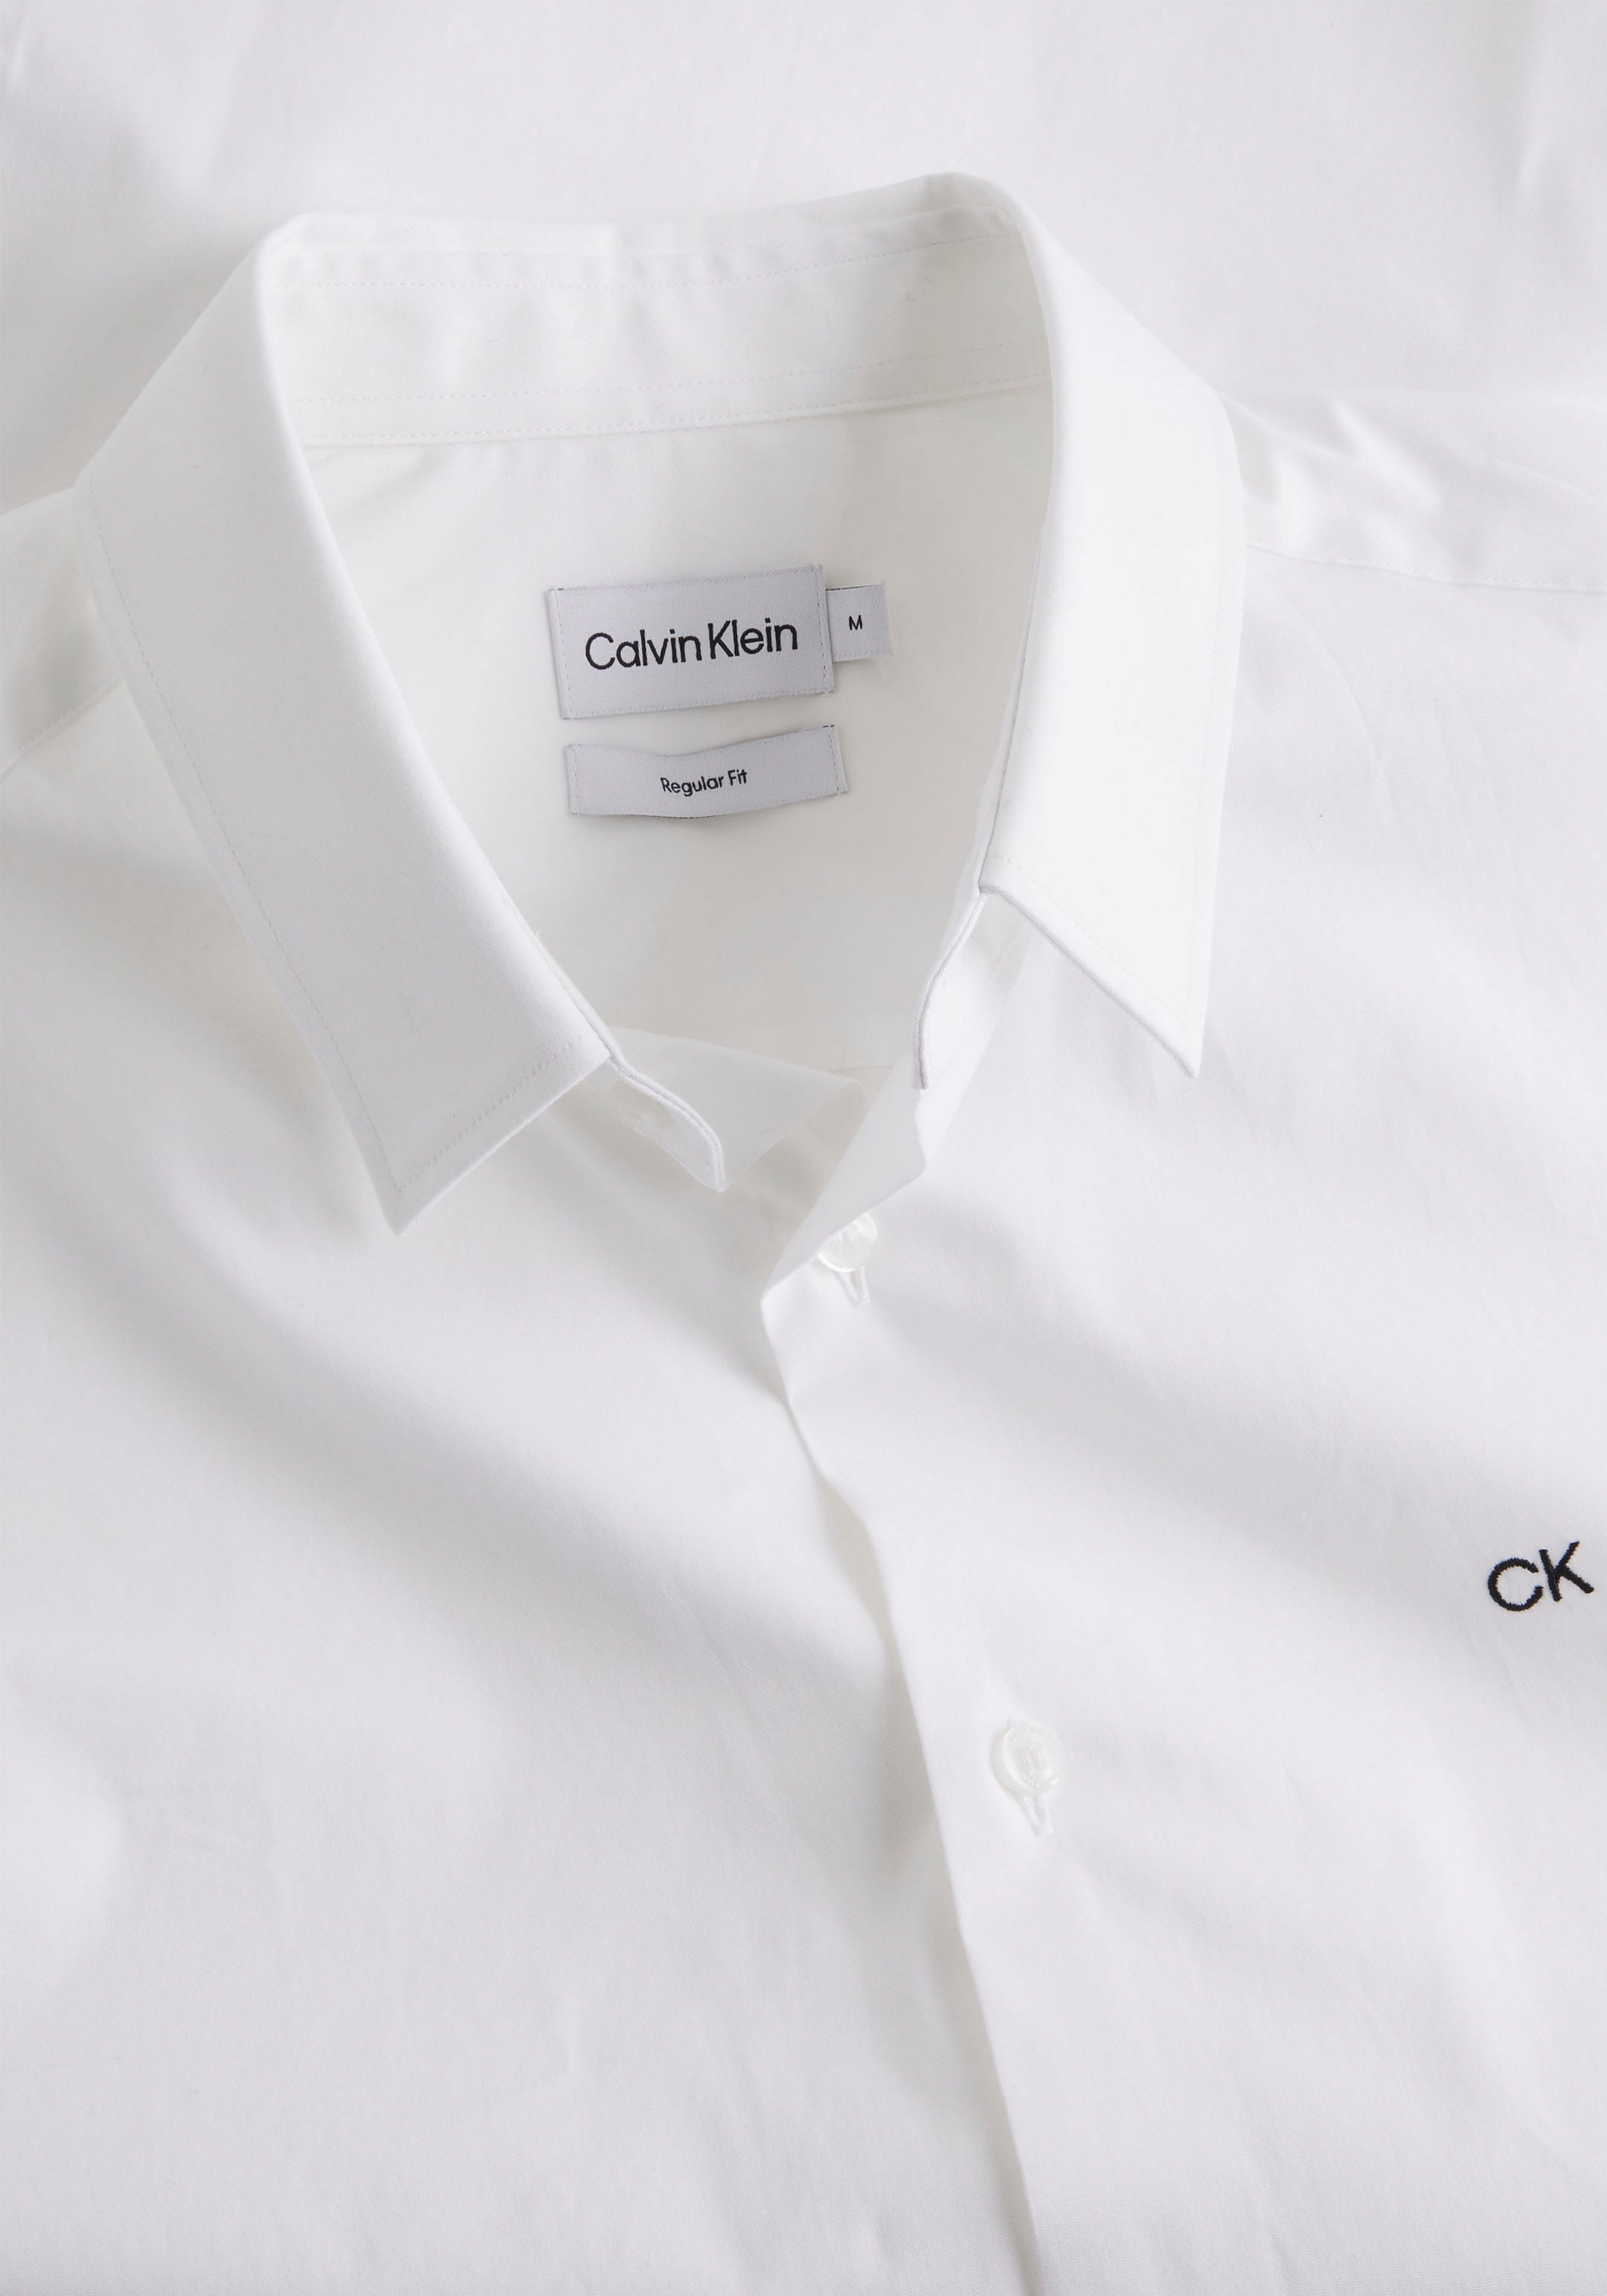 Logo Calvin Calvin auf bei der Klein Kurzarmhemd, OTTO Klein mit Brust